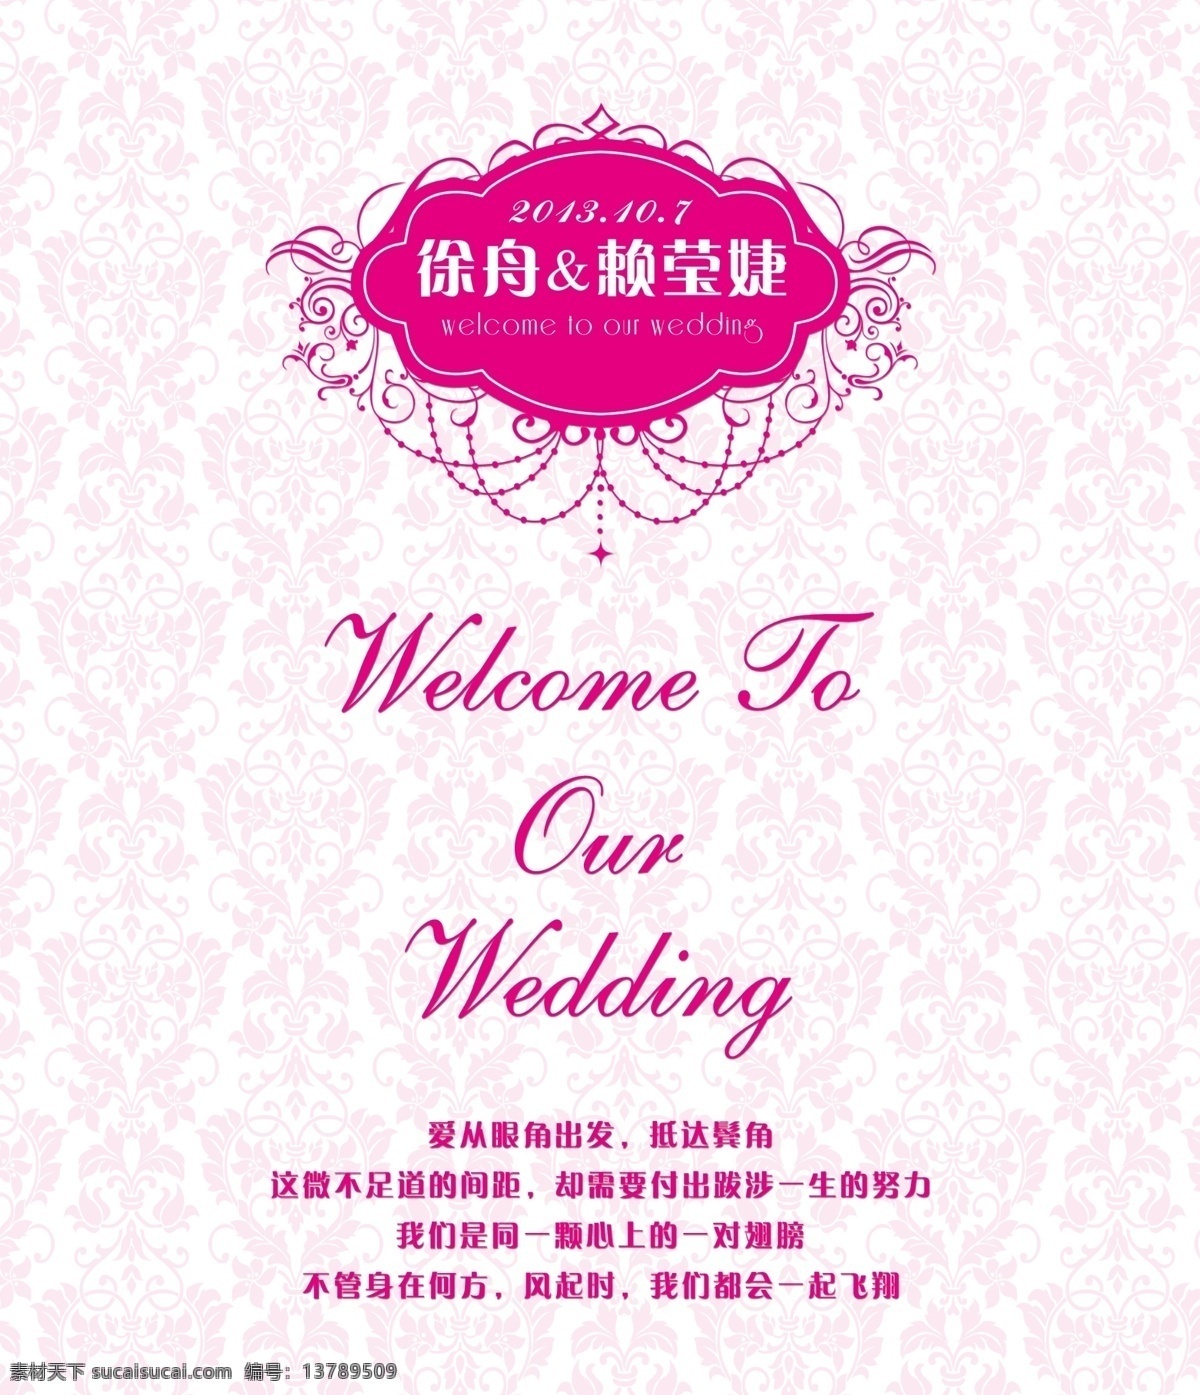 婚礼 wedding 婚礼logo 欧式底纹 吊灯 展板模板 广告设计模板 源文件